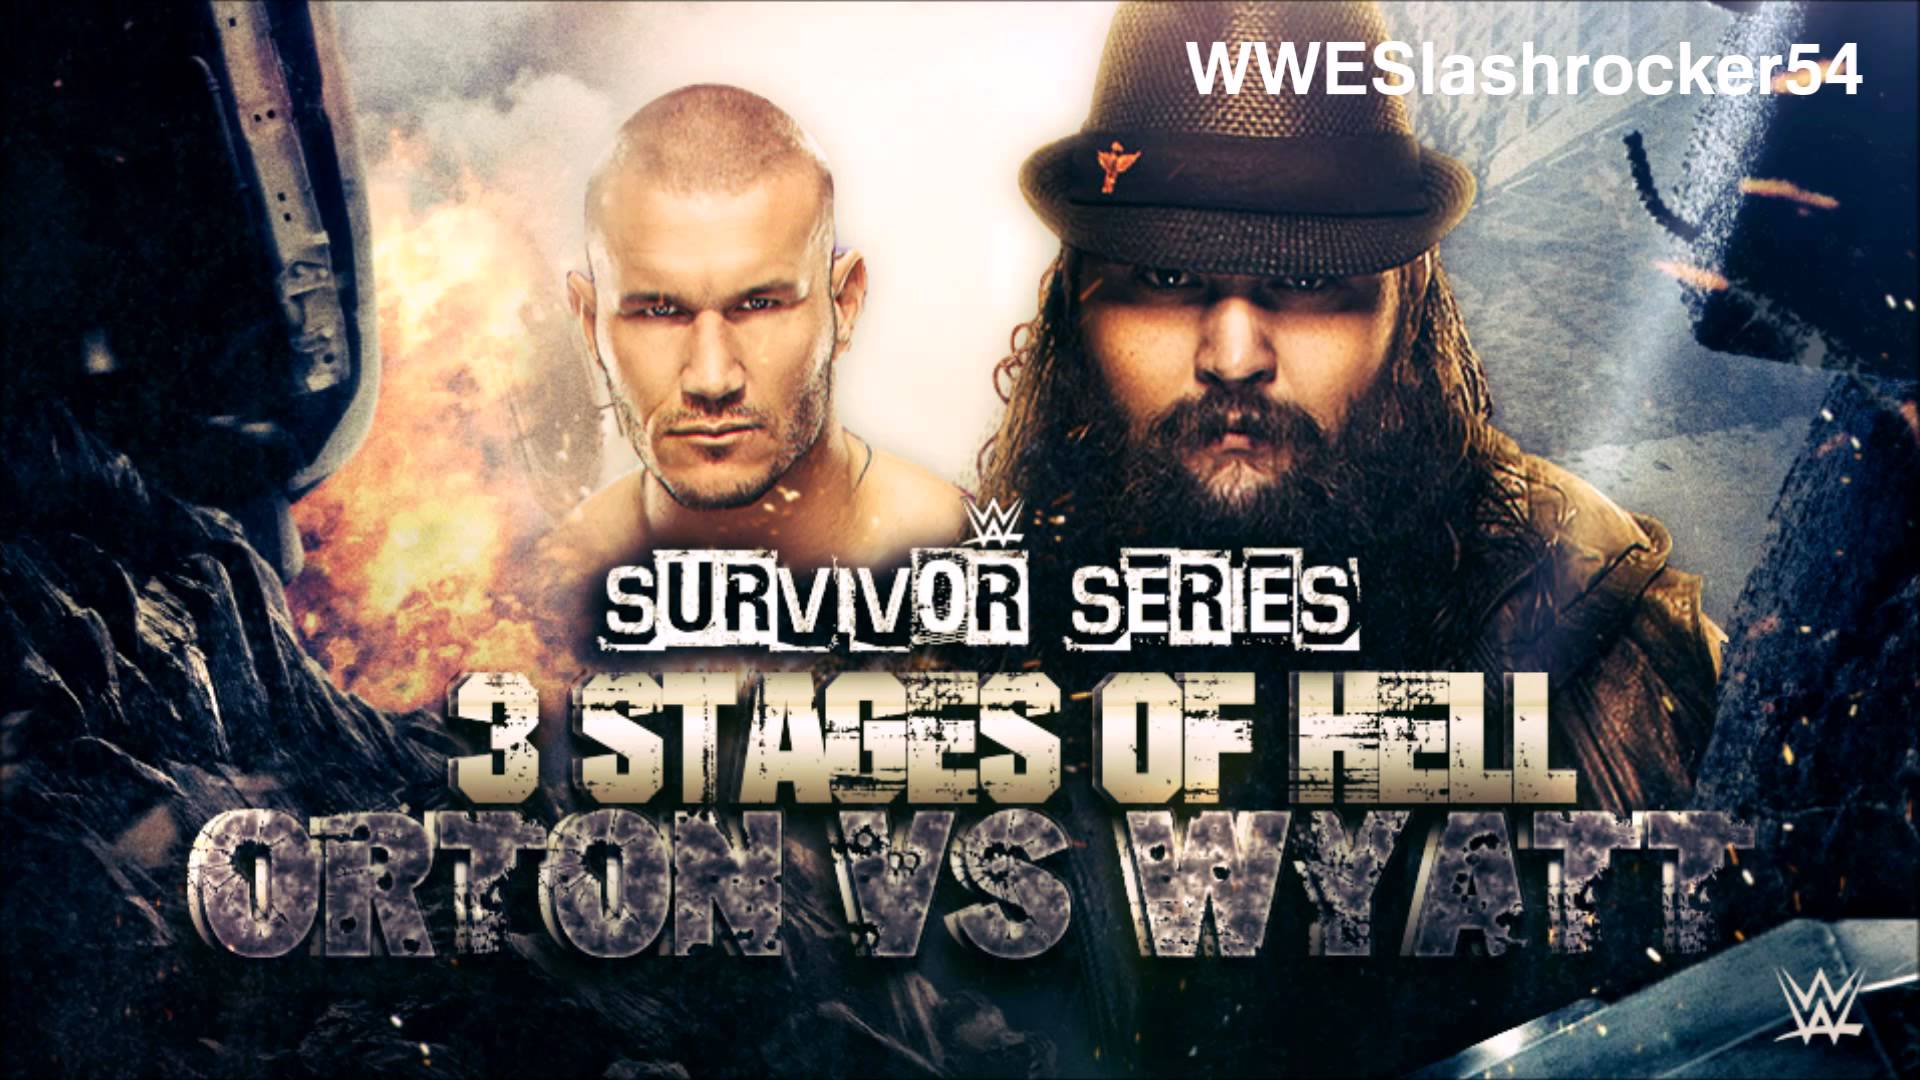 WWE Survivor Series 2015 Orton vs Bray Wyatt